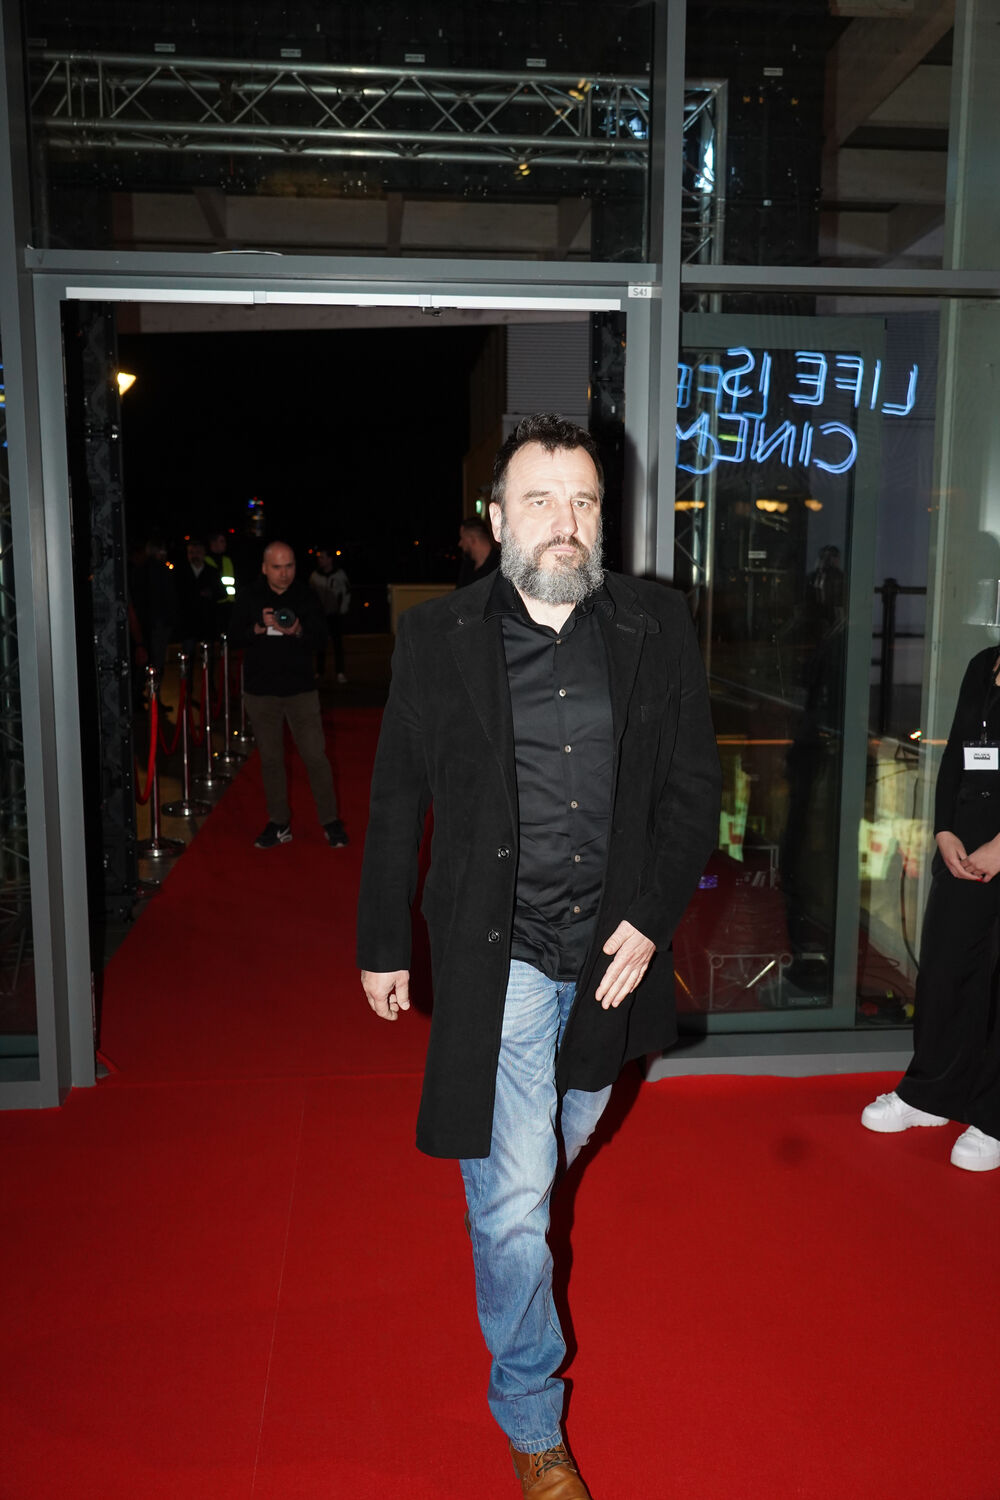 Glumac Nenad Jezdić je 14. marta, prekinuo izvođenje predstave u Zvezdara teatru